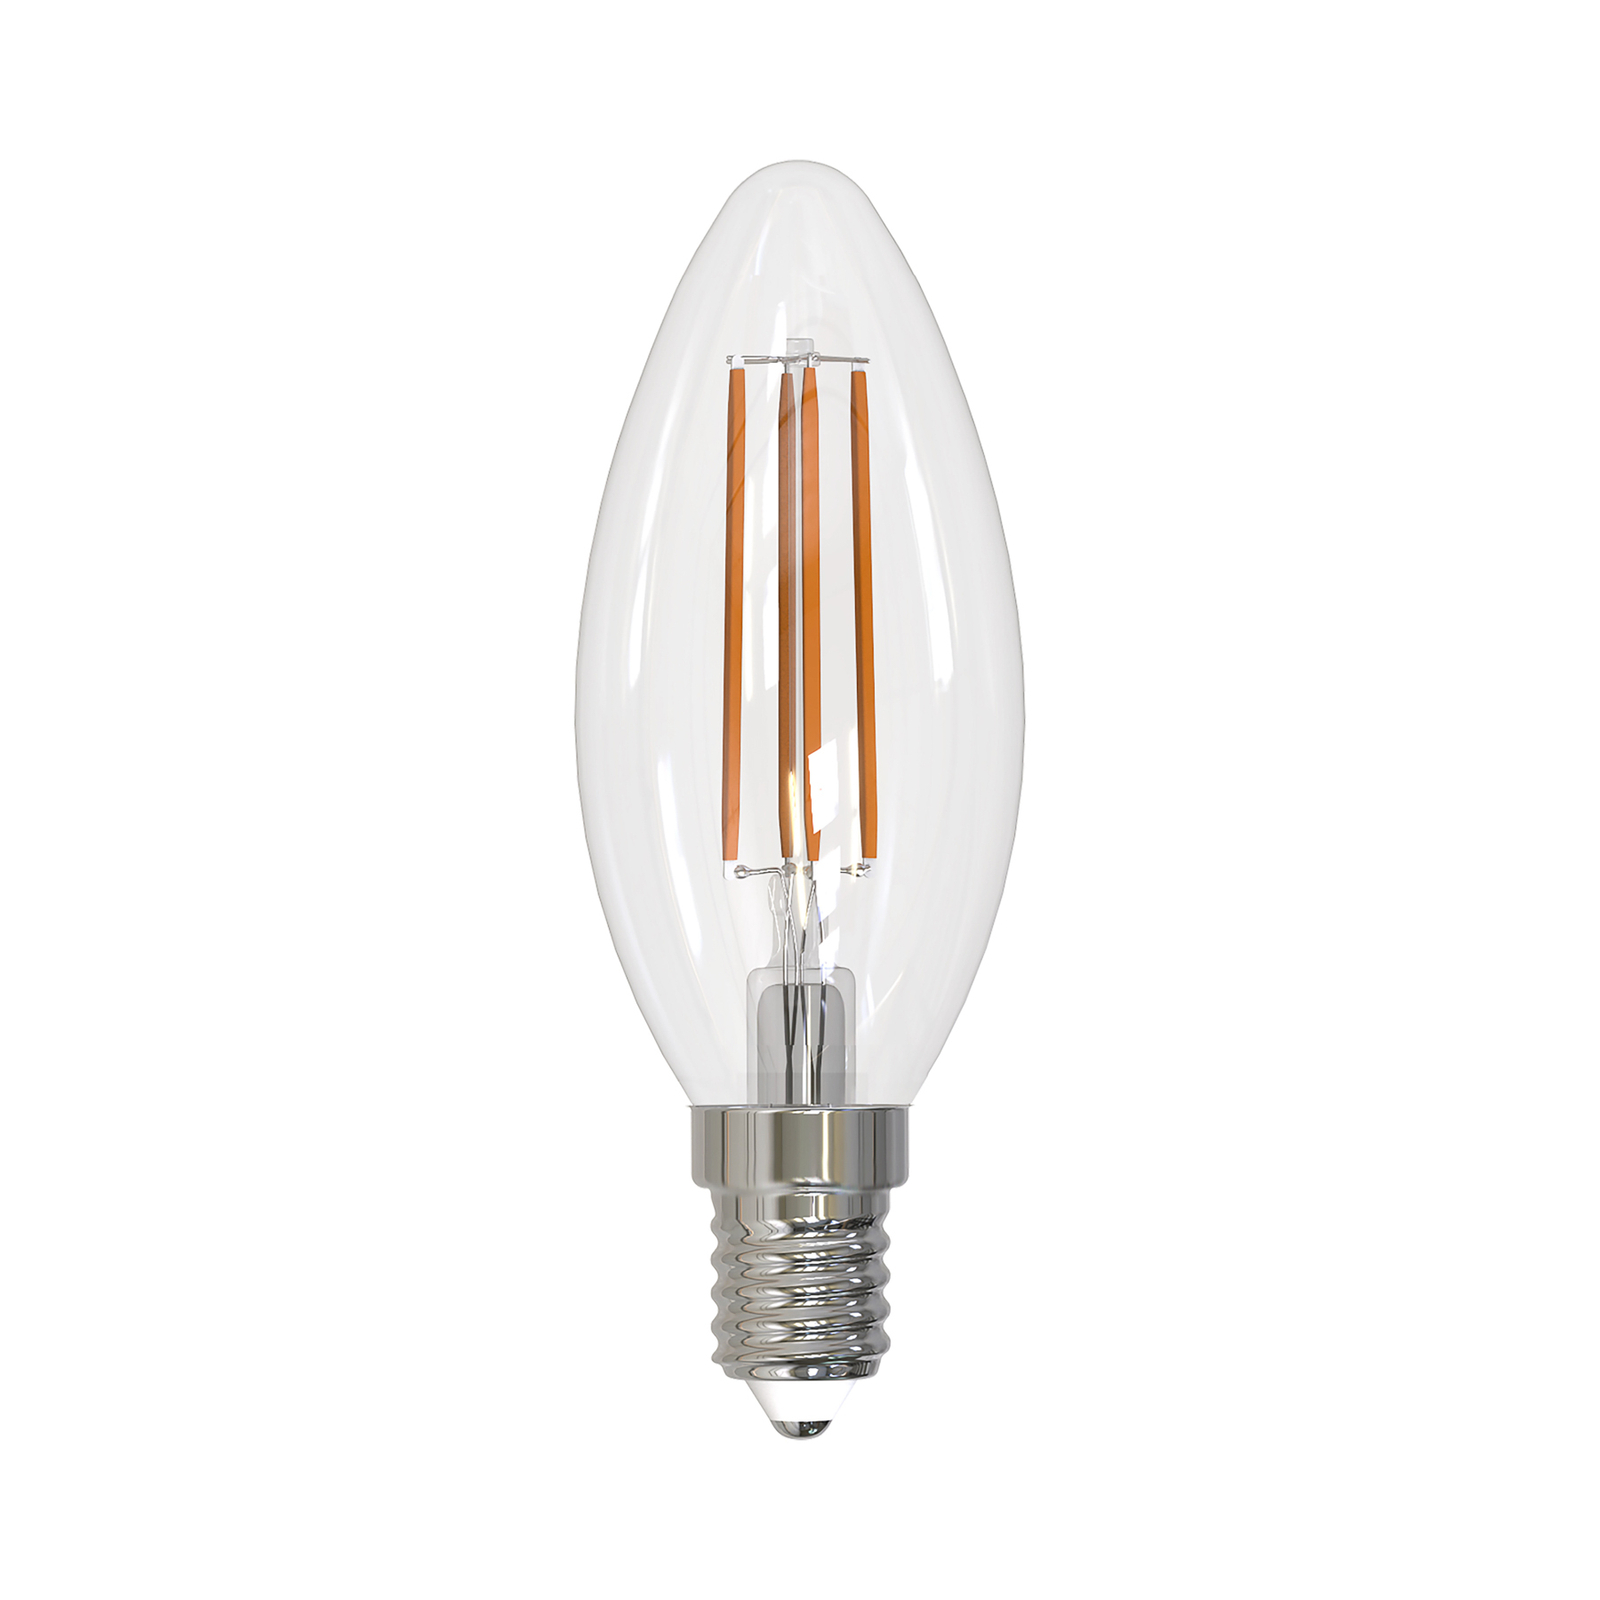 Arcchio LED-filamentlampa E14 ljus, set om 2, 4000 K